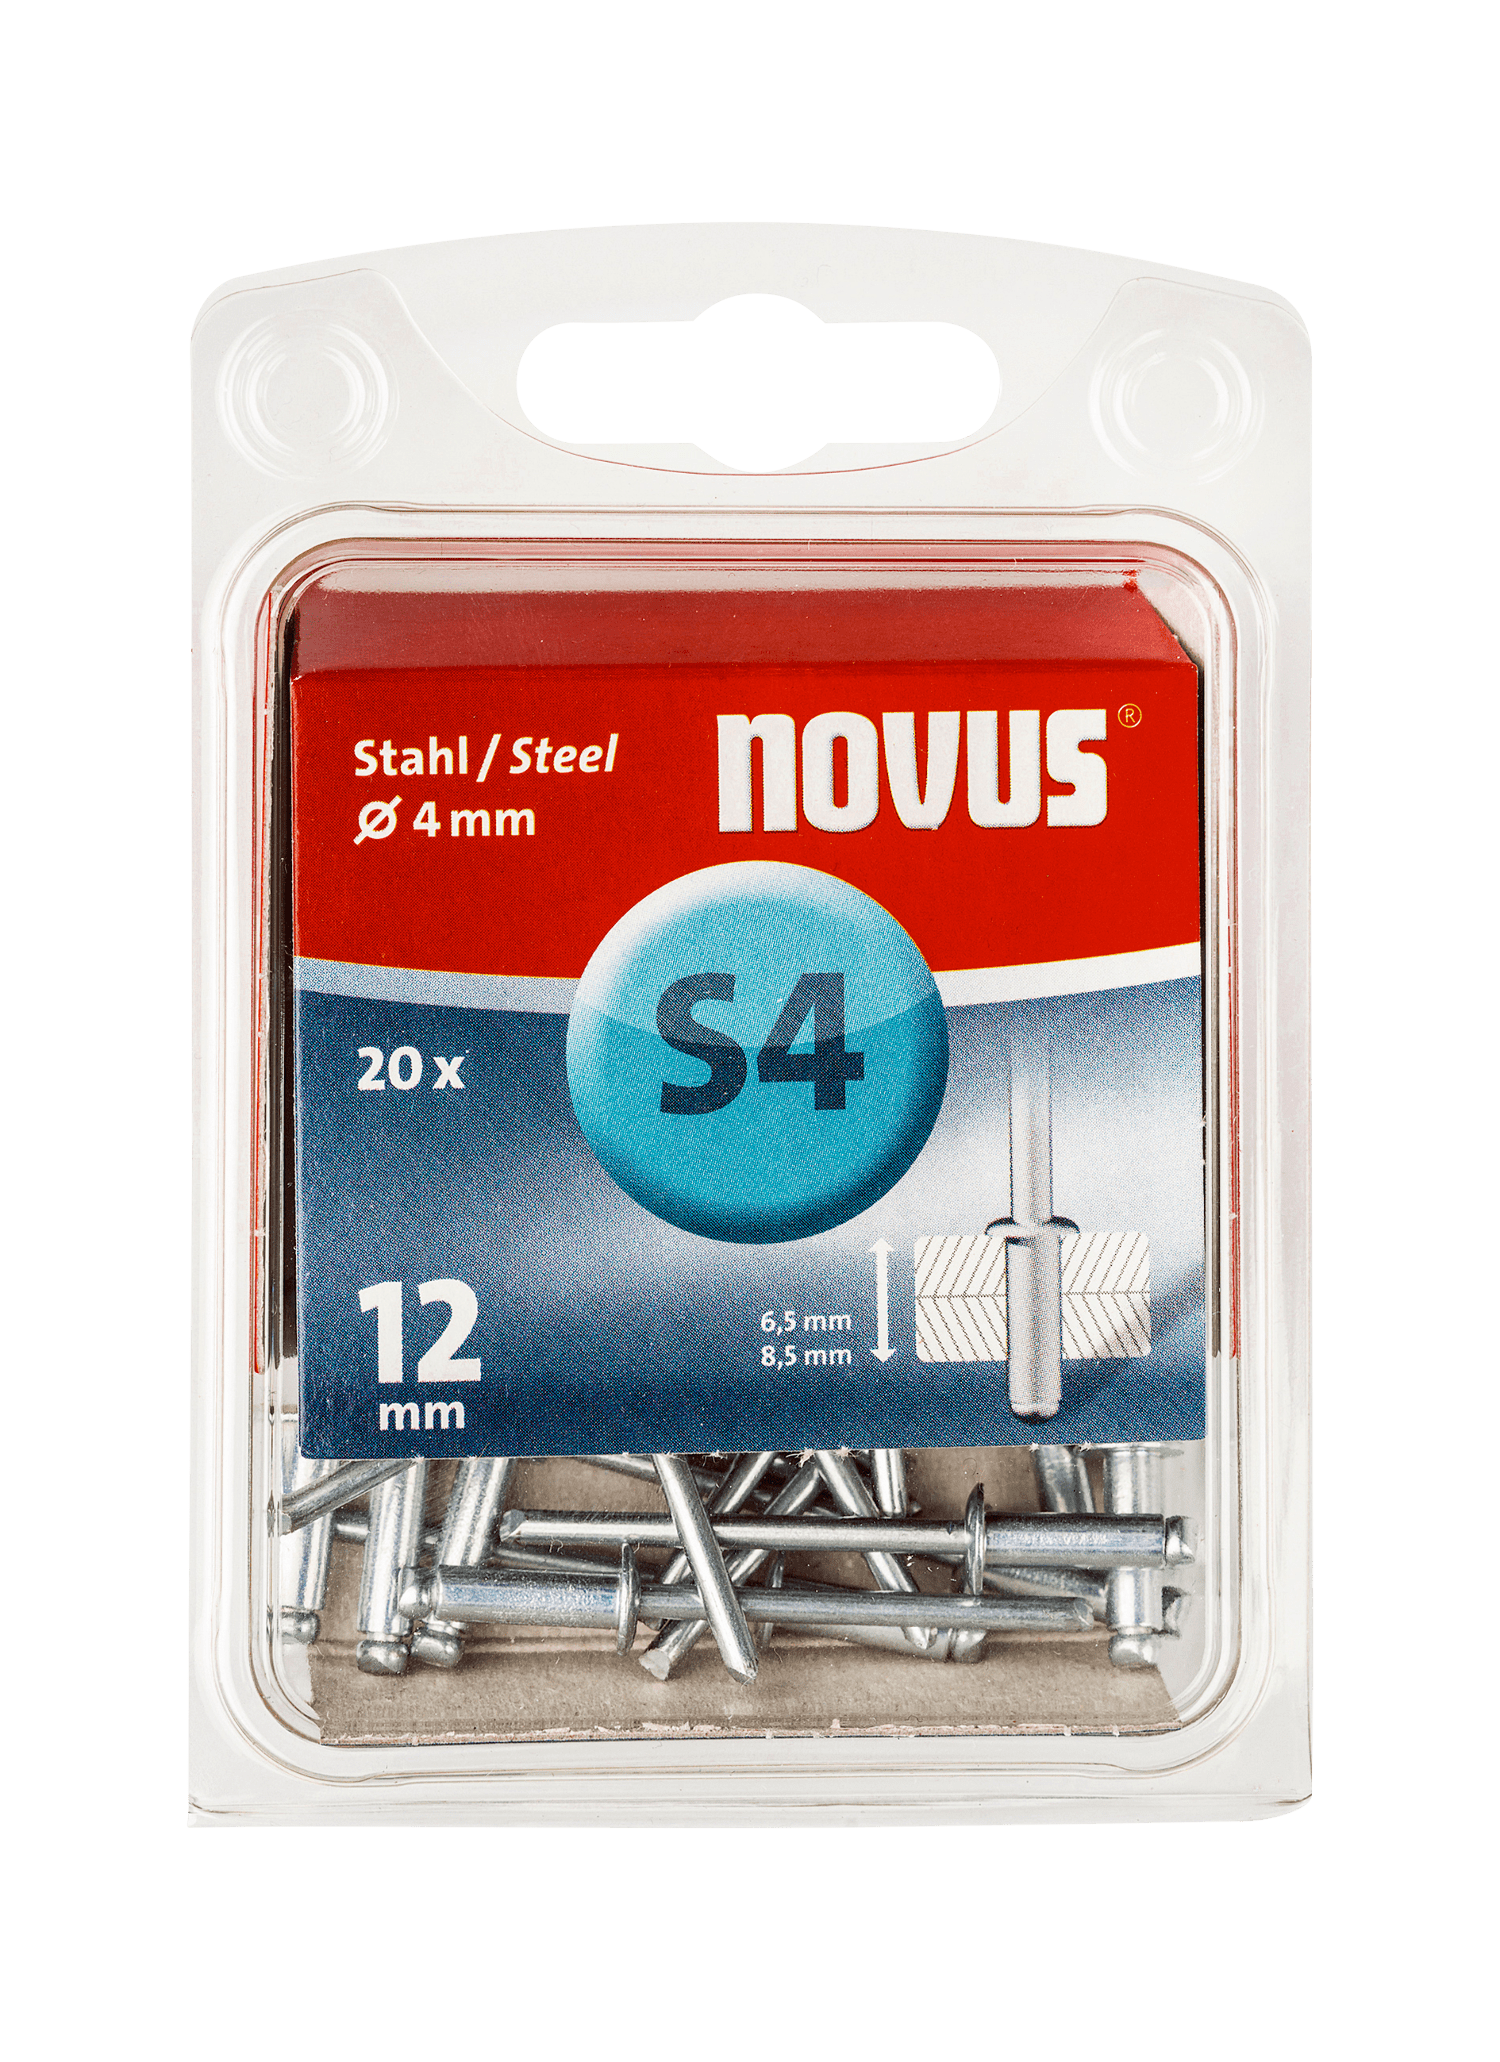 NOVUS steel blind rivet Type S4